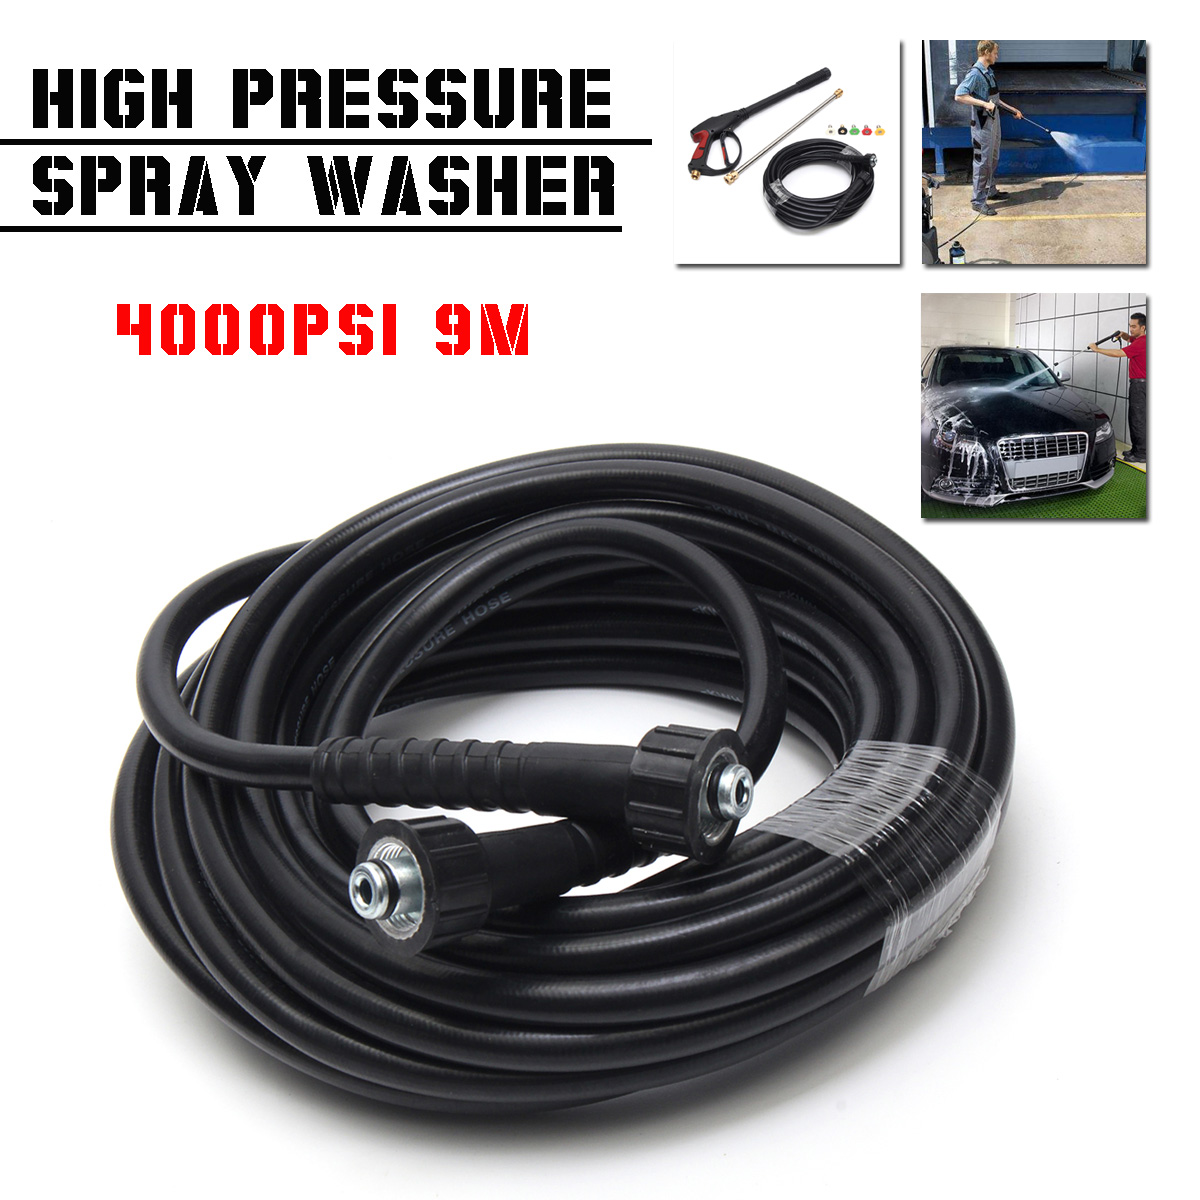 4000PSI-High-Pressure-Spraying-Gun-Wand-Lance-Water-Washer-Spraying-Tool-9M-Hose-Nozzle-5-Tips-1321155-1